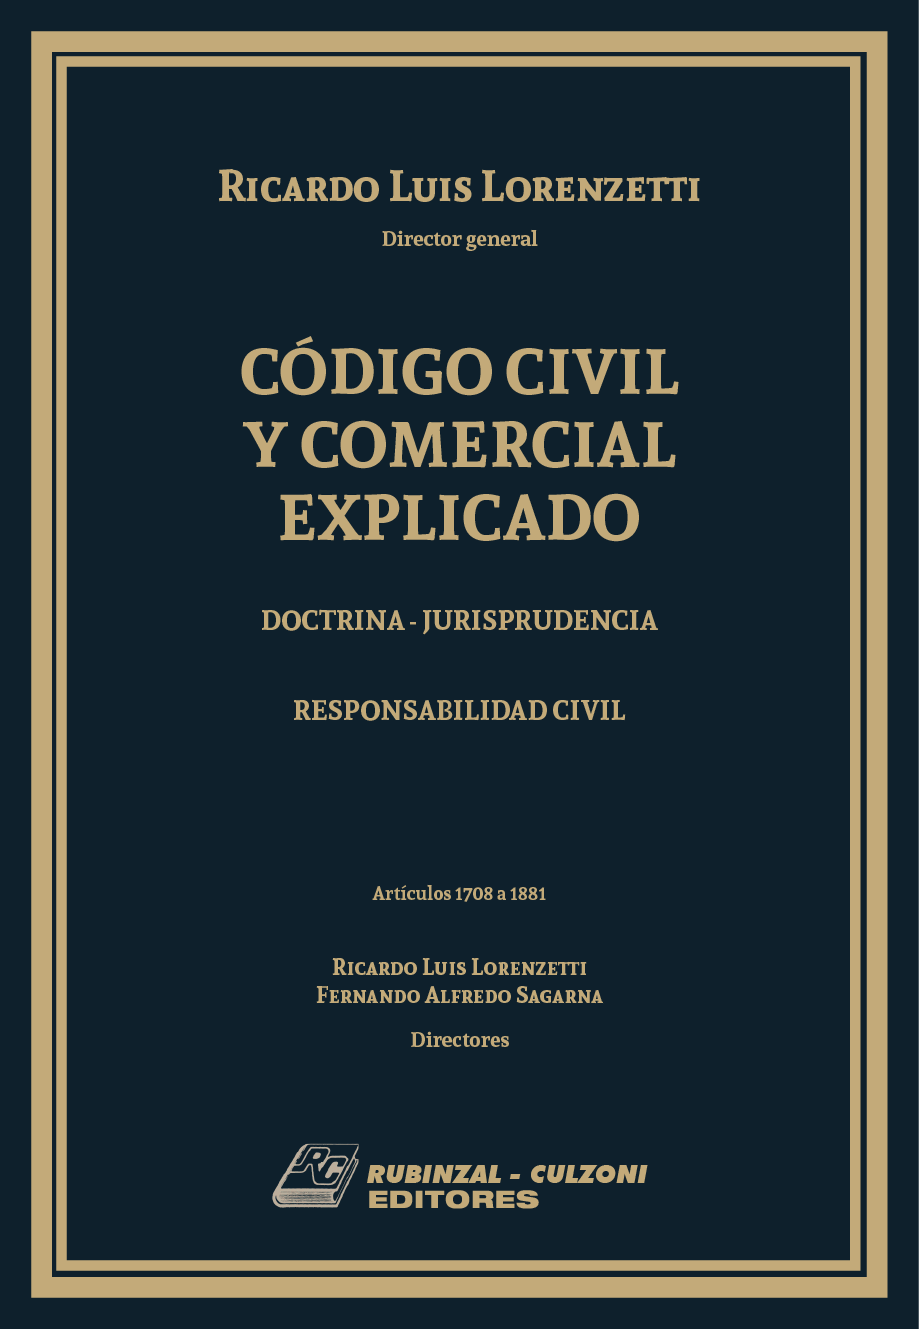 Código Civil y Comercial Explicado. Doctrina - Jurisprudencia - Libro III: Responsabilidad Civil (Arts. 1708 a 1881)